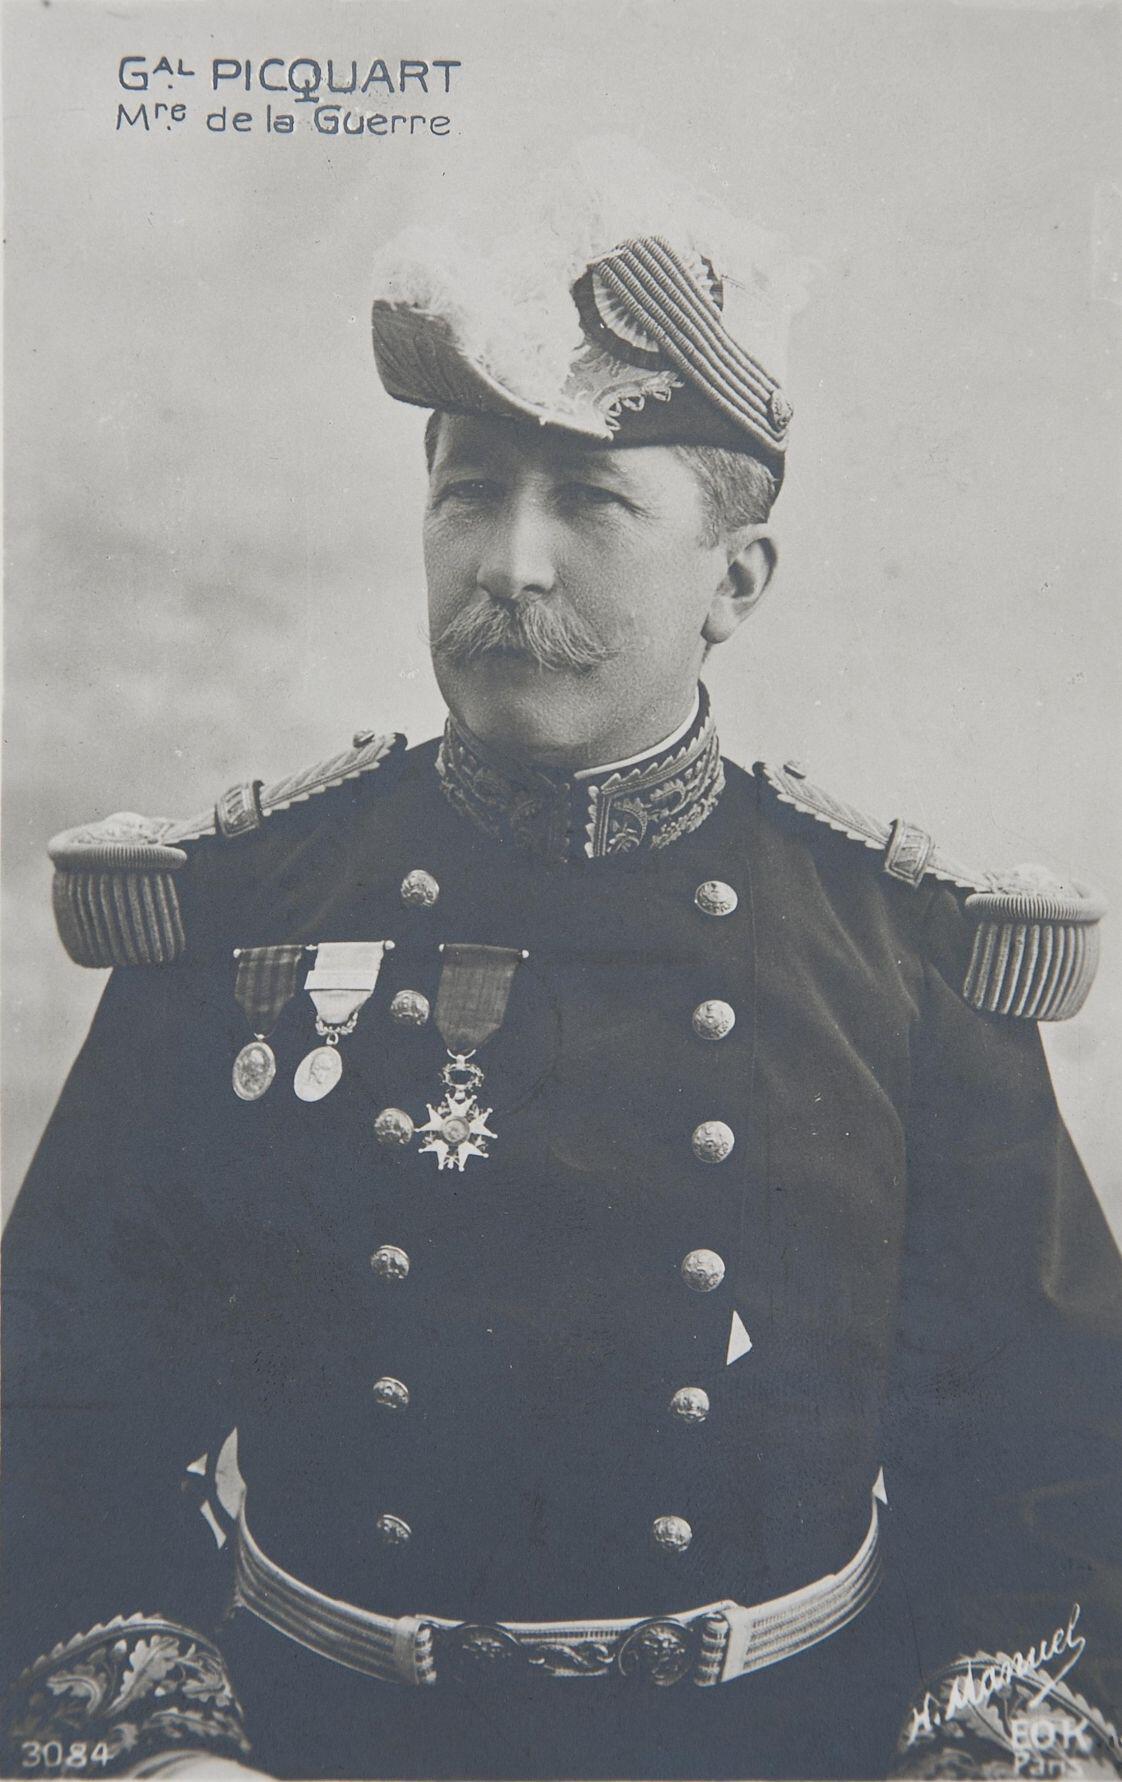 Marie-Georges Picquart służył jako sprawozdawca podczas pierwszego procesu Alfreda Dreyfusa dla ministra wojny oraz szefa sztabu